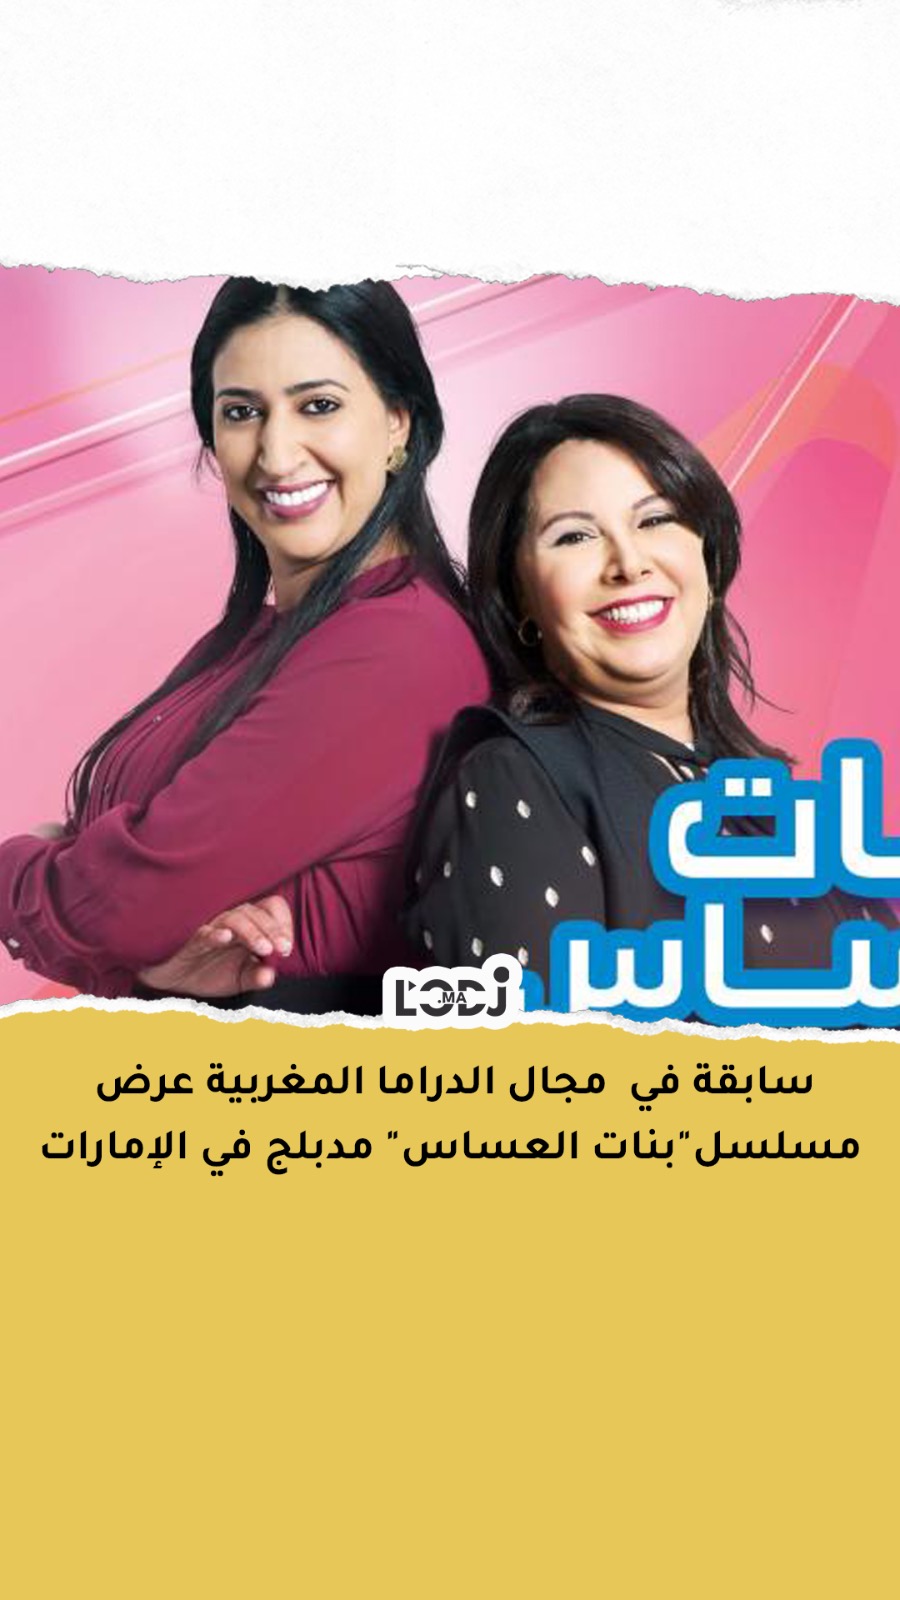 سابقة في مجال الدراما المغربية عرض مسلسل"بنات العساس" مدبلج في الإمارات